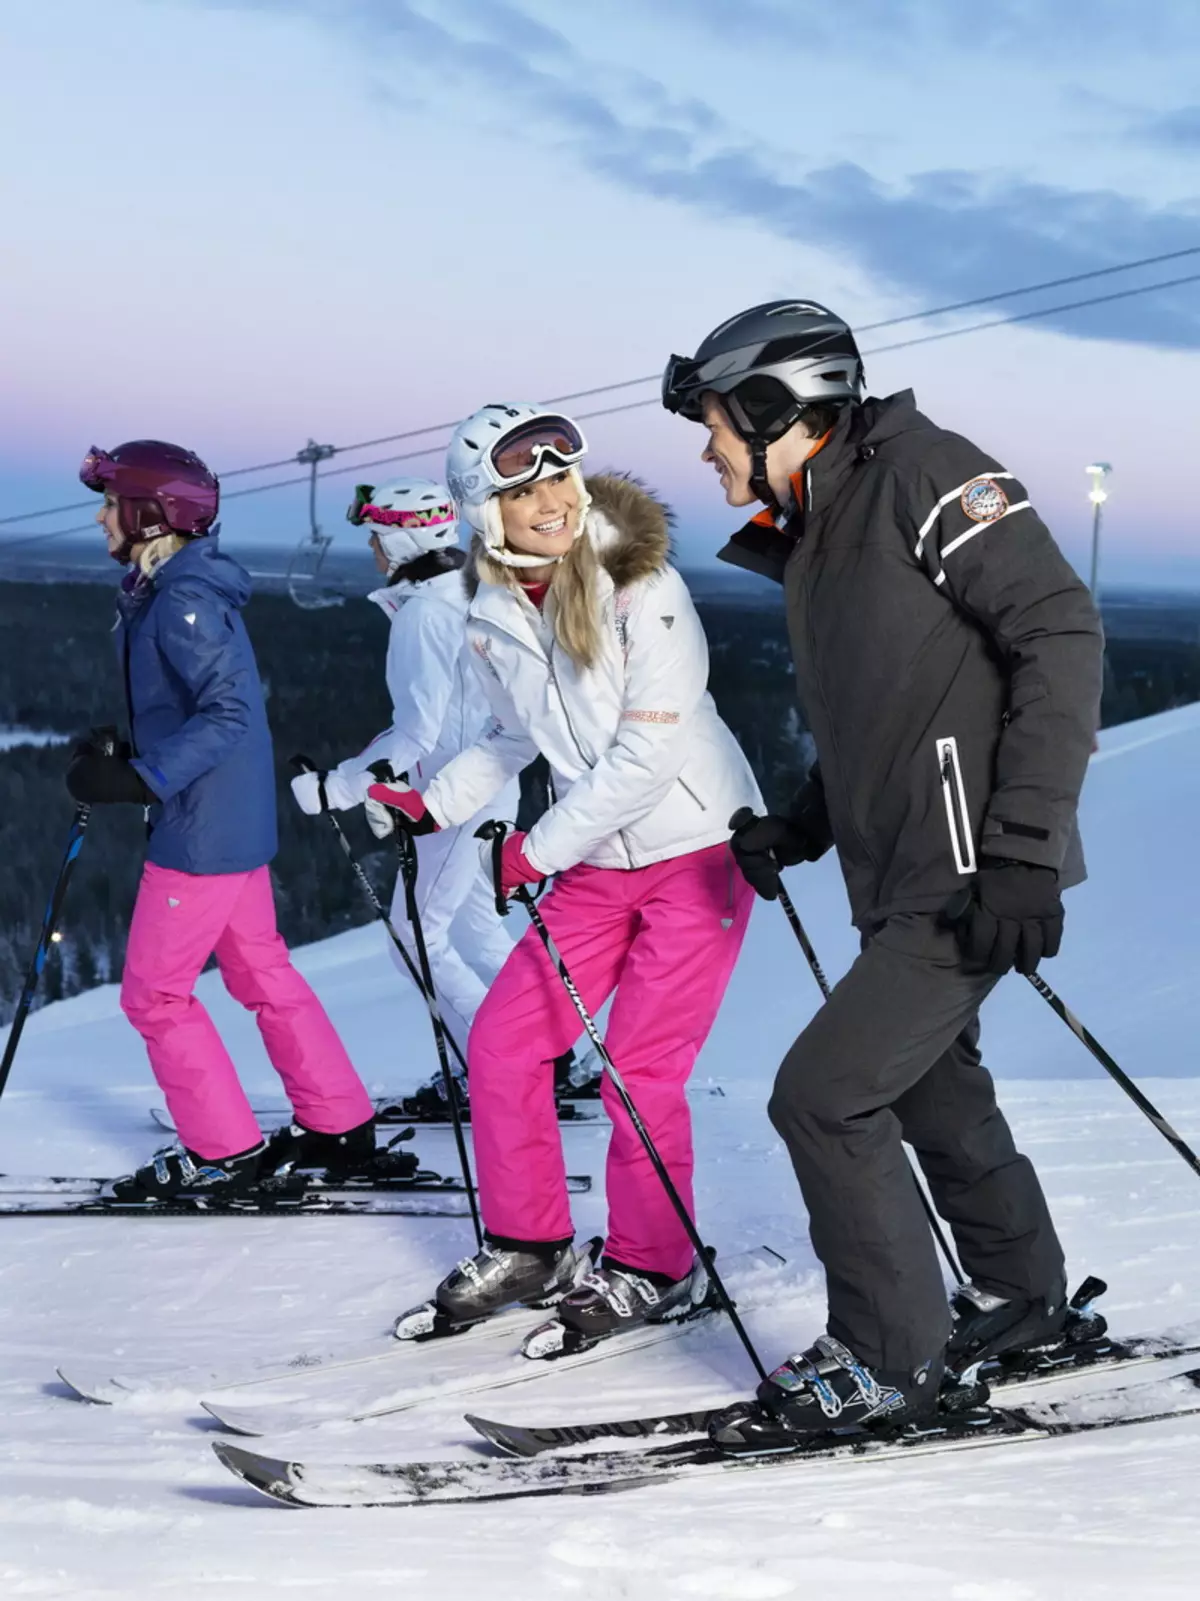 В чем ходят на горнолыжных курортах. Одежда для катания на горных лыжах. Катание на лыжах. Люди на горнолыжном курорте. Одежда для лыжного курорта.